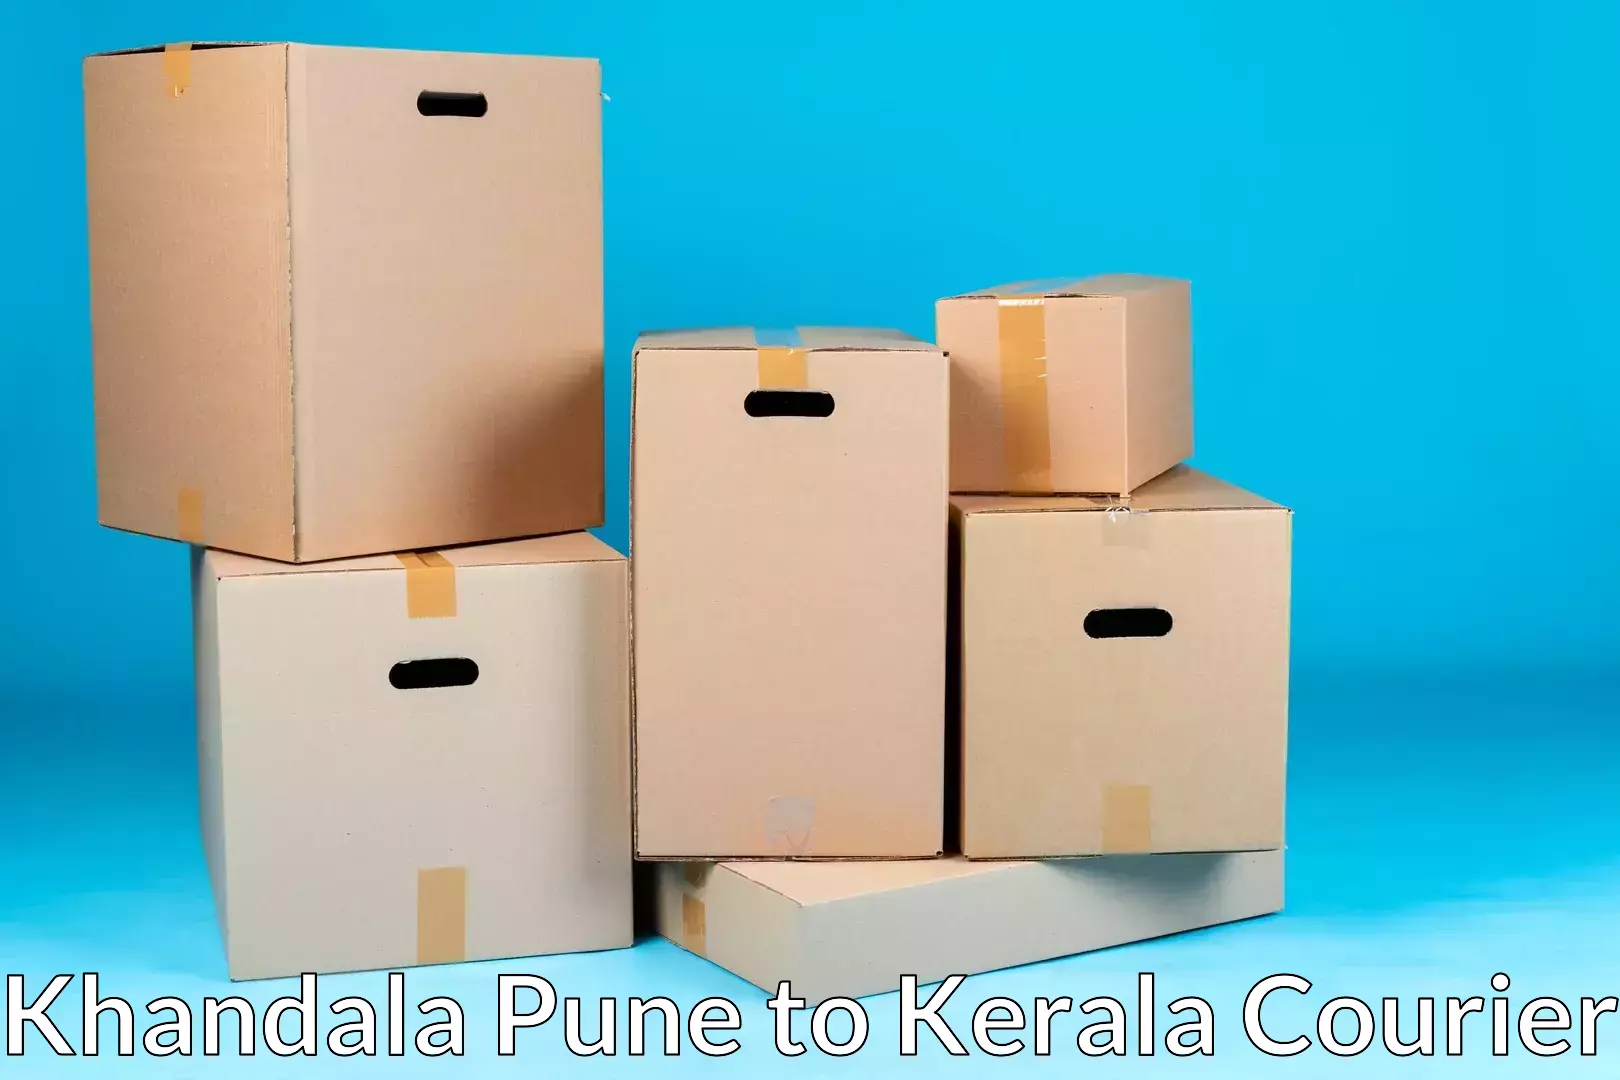 Home goods moving company Khandala Pune to Kerala